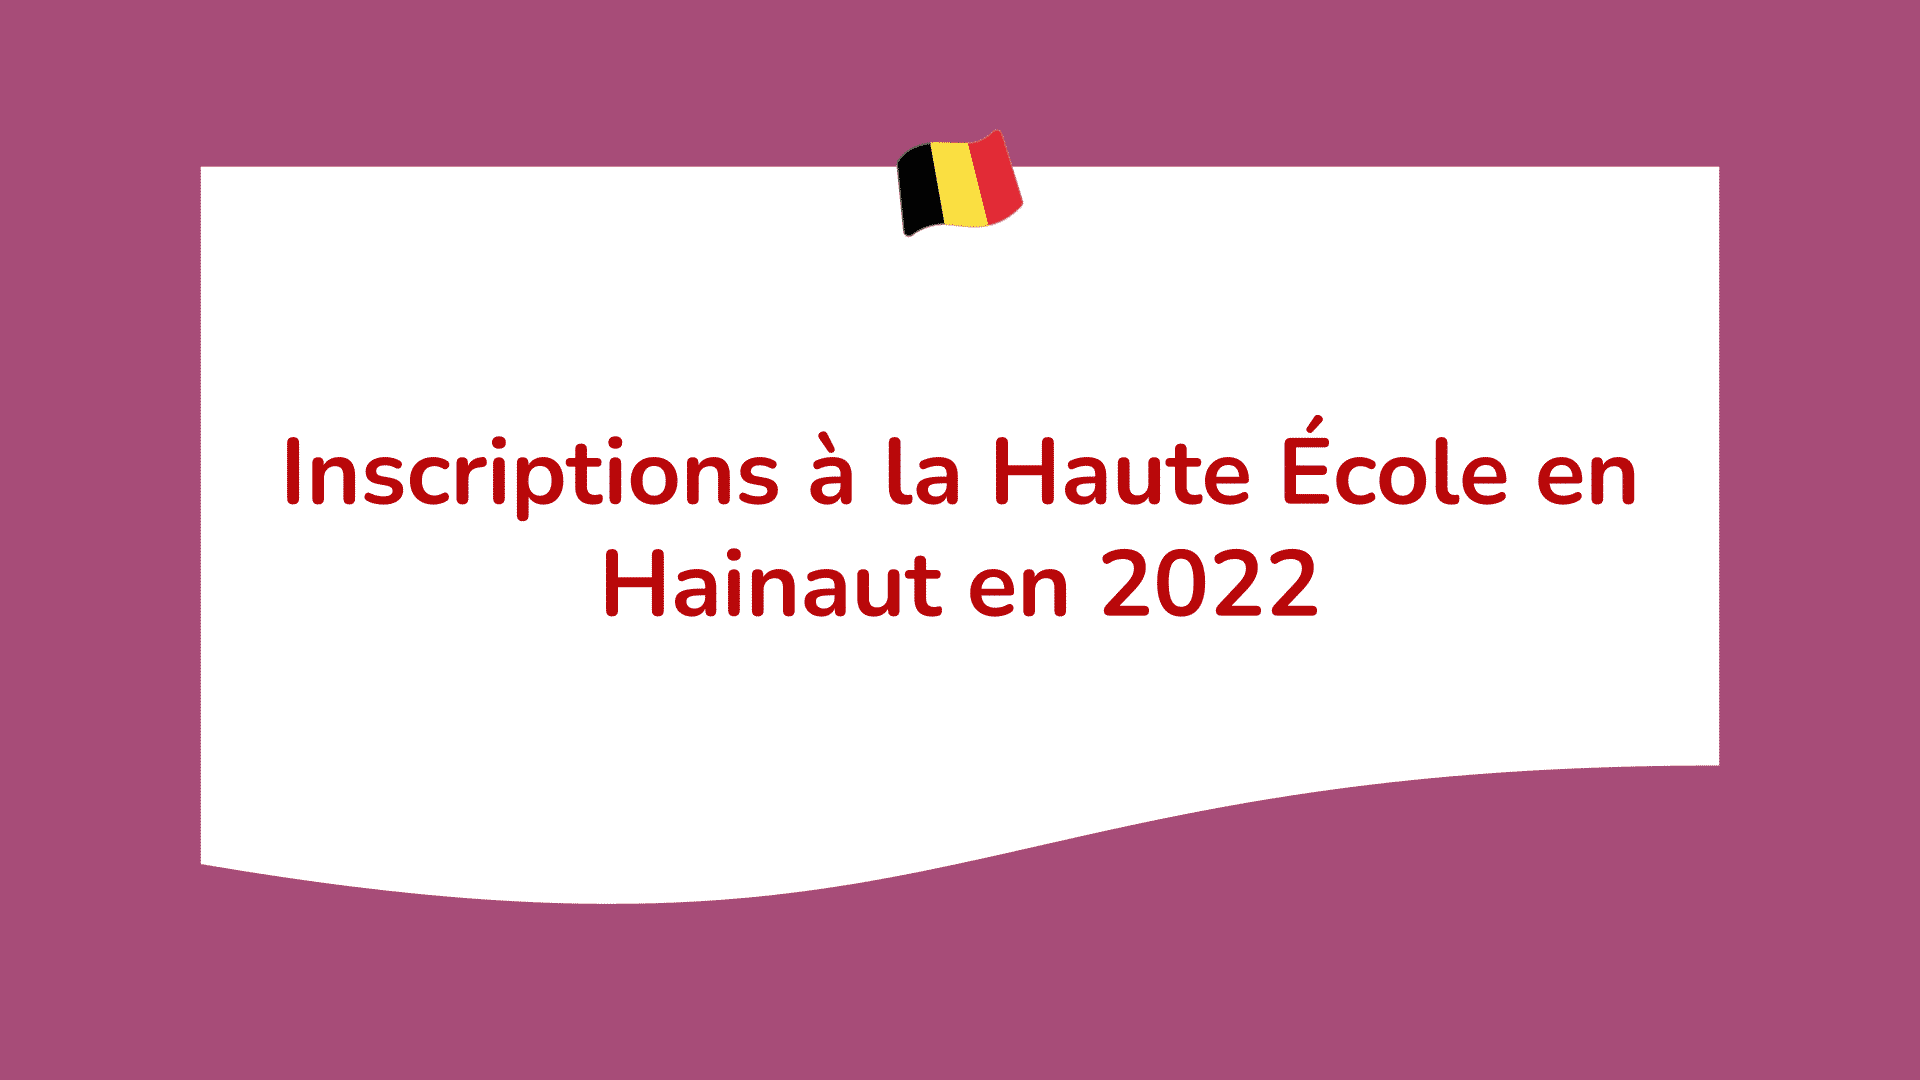 Haute École en Hainaut